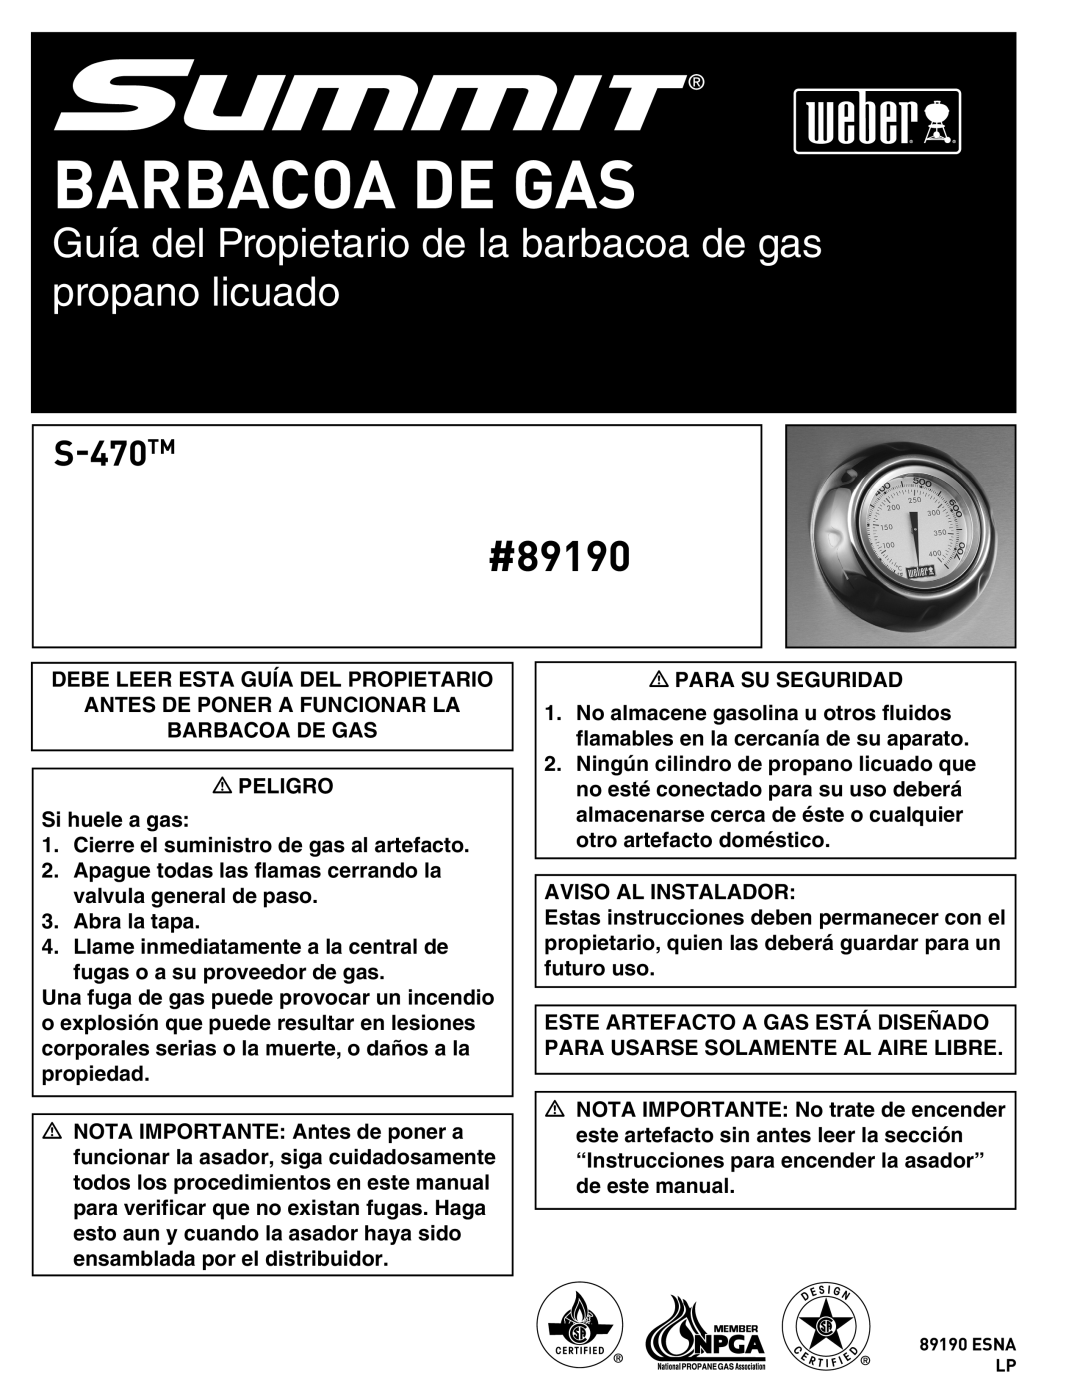 Summit manual Barbacoa De Gas, Guía del Propietario de la barbacoa de gas propano licuado, #89190, S-470TM 